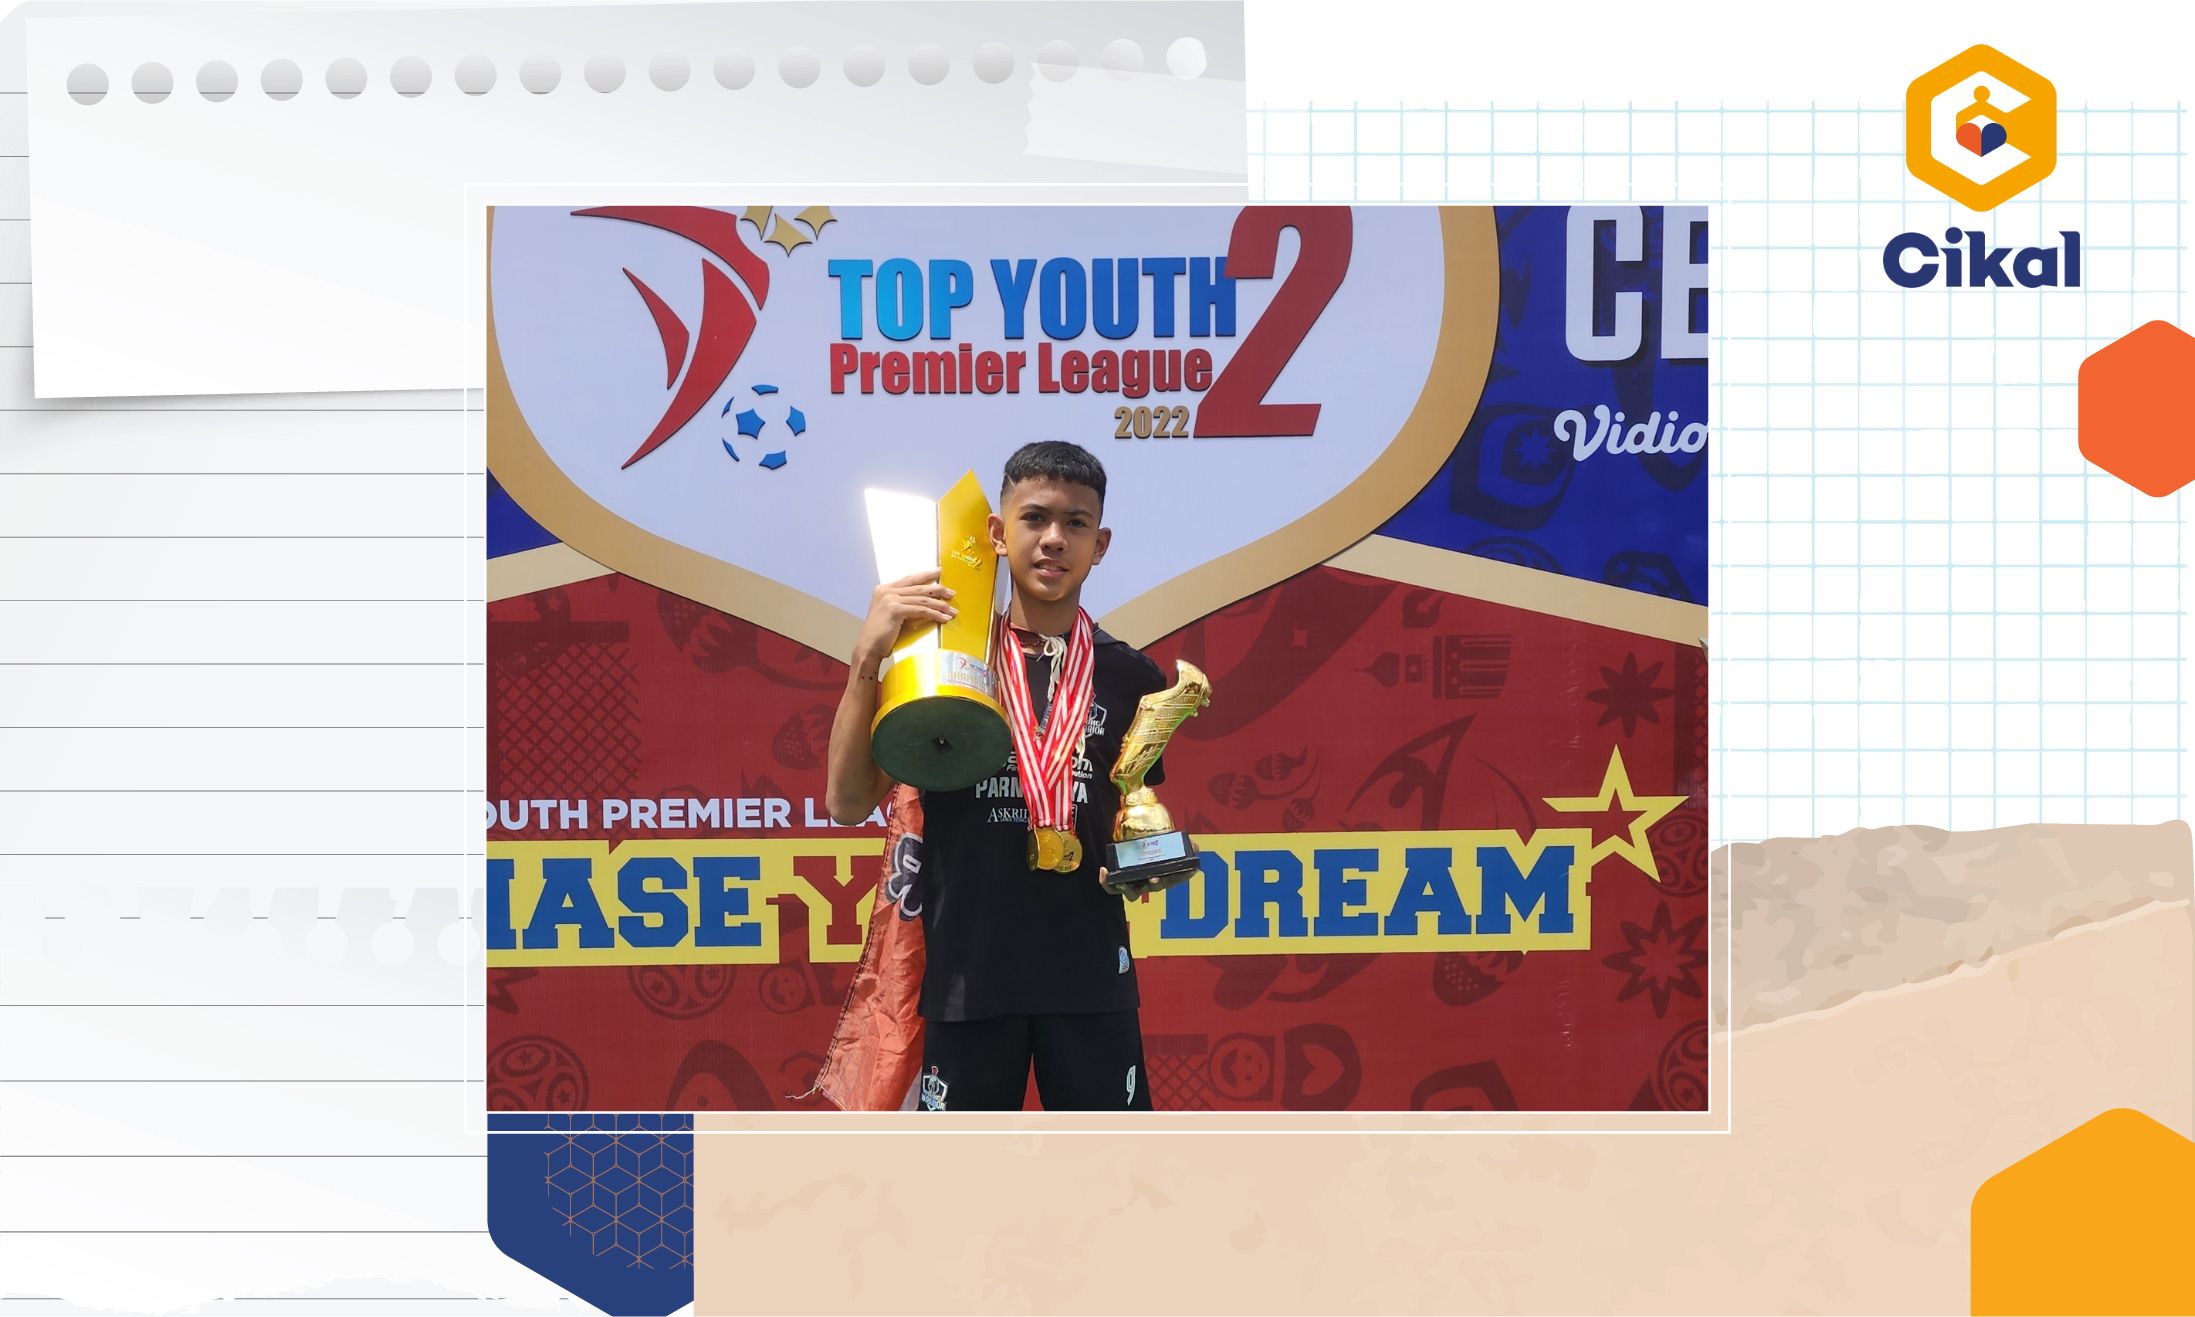 Raih 70 Medali Sejak Usia 7 Tahun, Inilah Cerita Vino, Murid Kelas 1 SMP Cikal Serpong, Atlet Sepak Bola Berprestasi dari Tangerang Selatan!